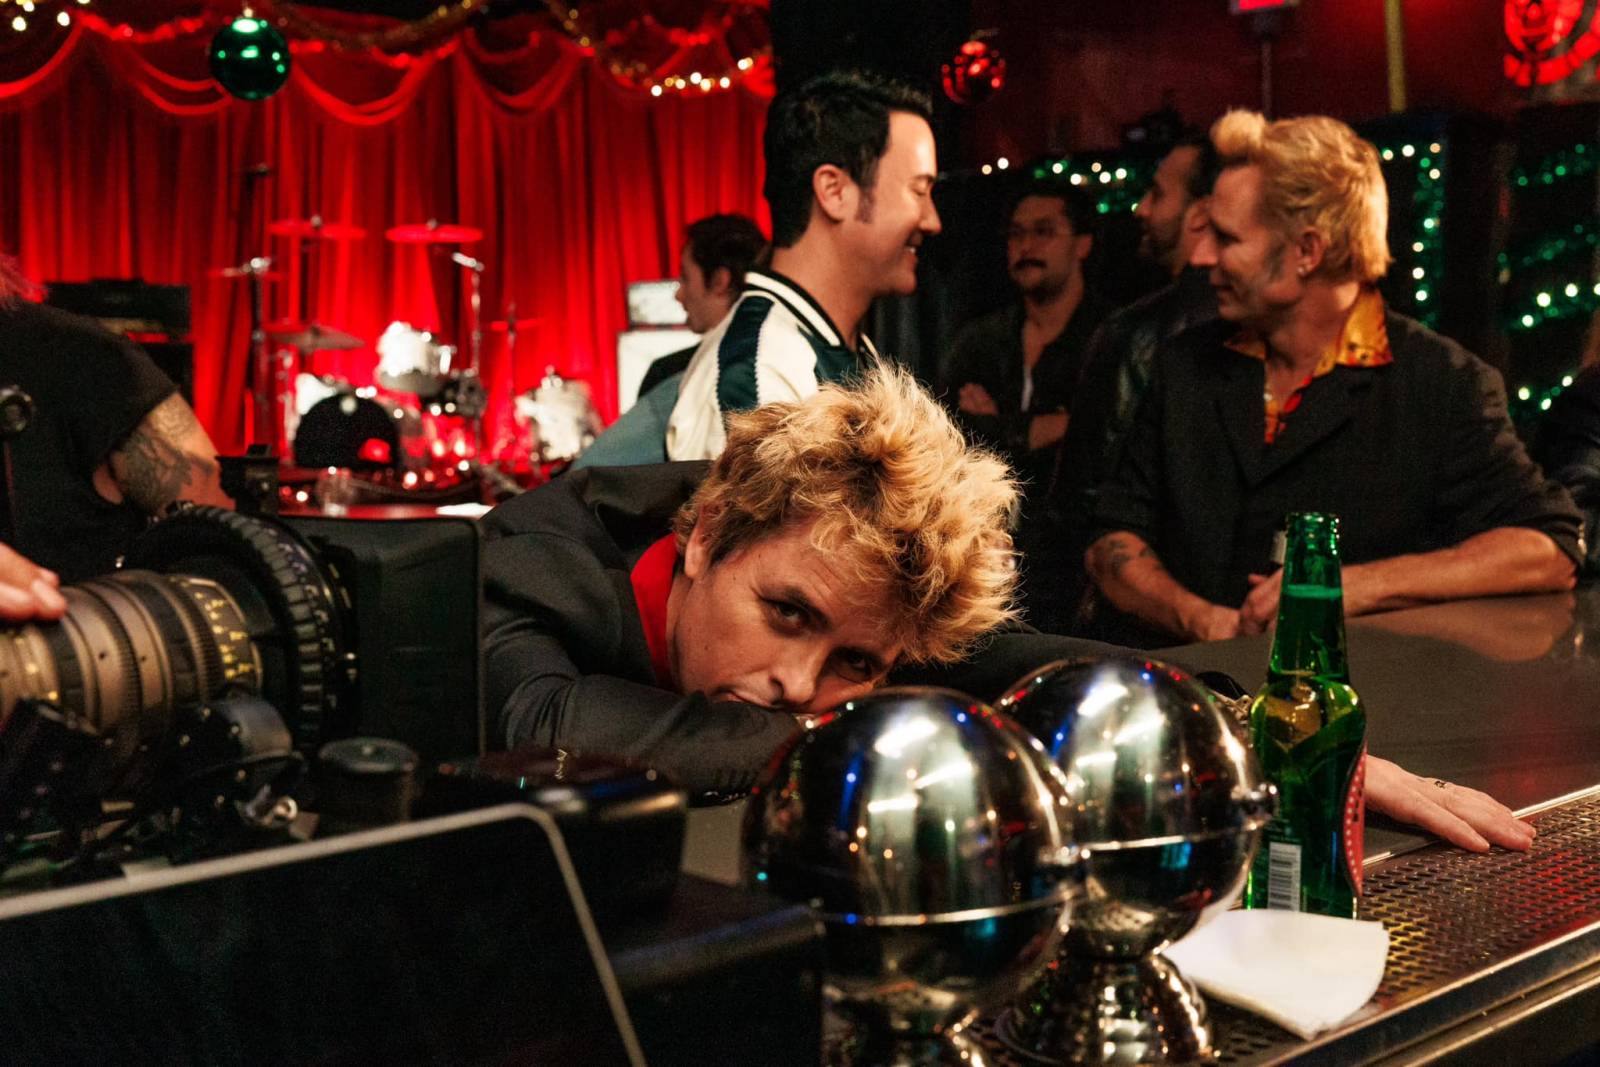 RECENZE: Green Day jsou ve formě. Saviors je jejich nejlepší deska za poslední léta